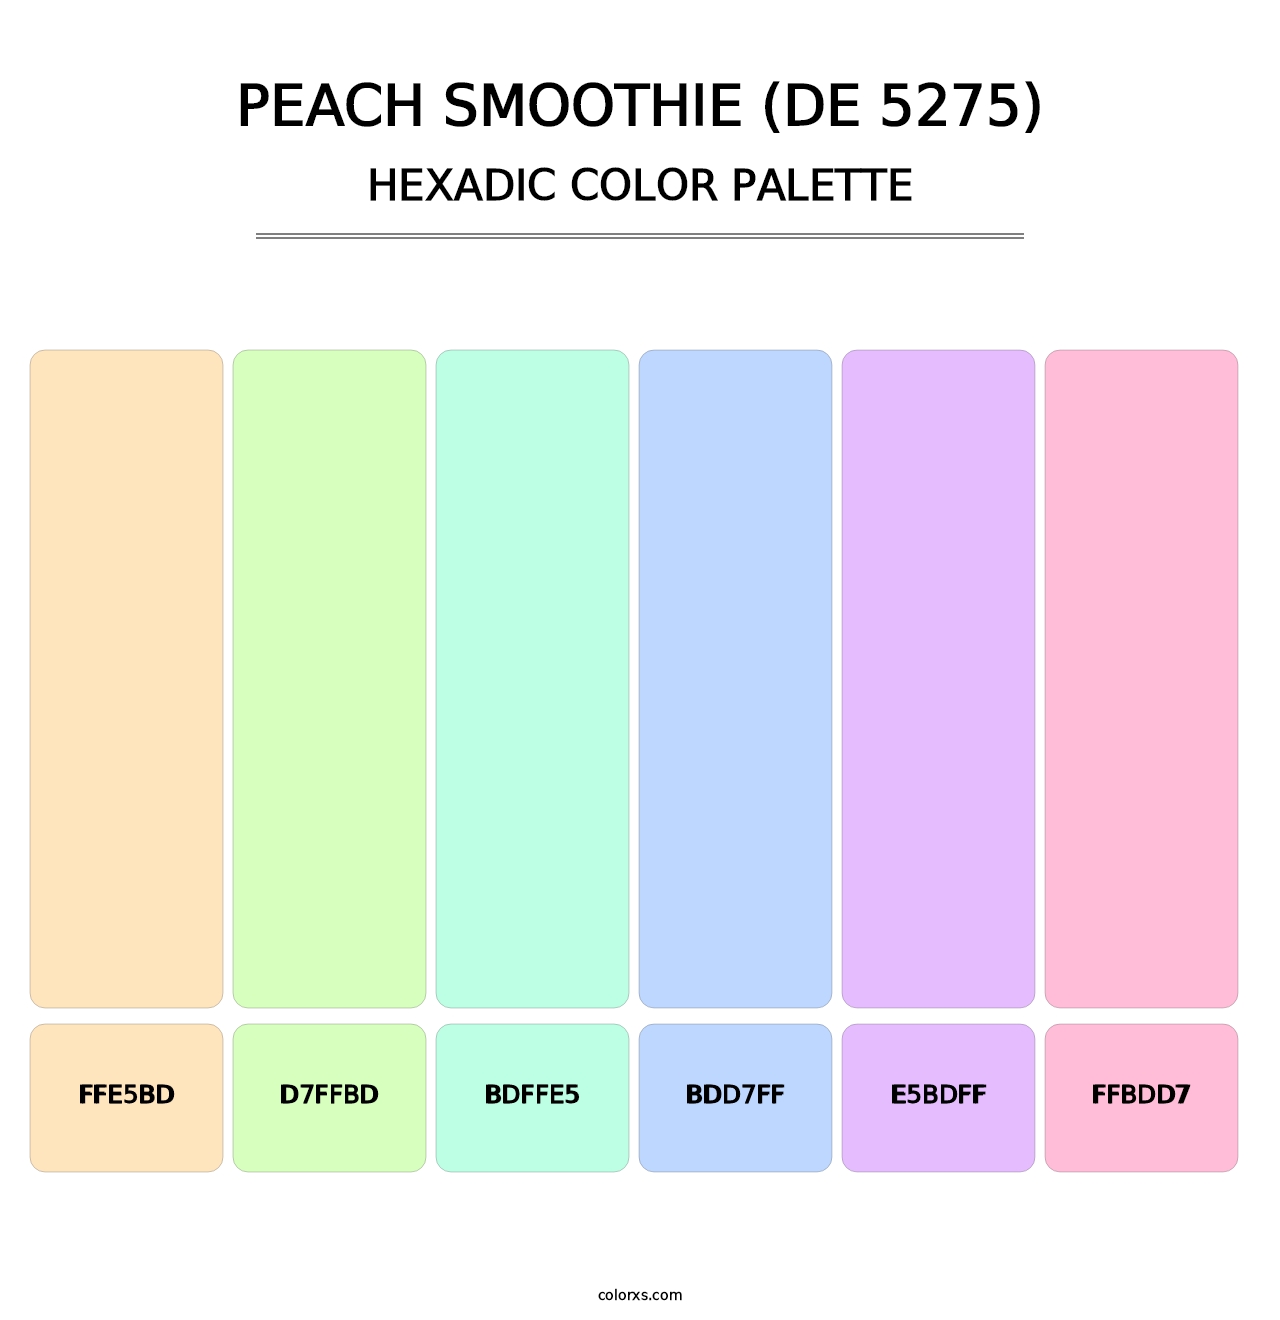 Peach Smoothie (DE 5275) - Hexadic Color Palette